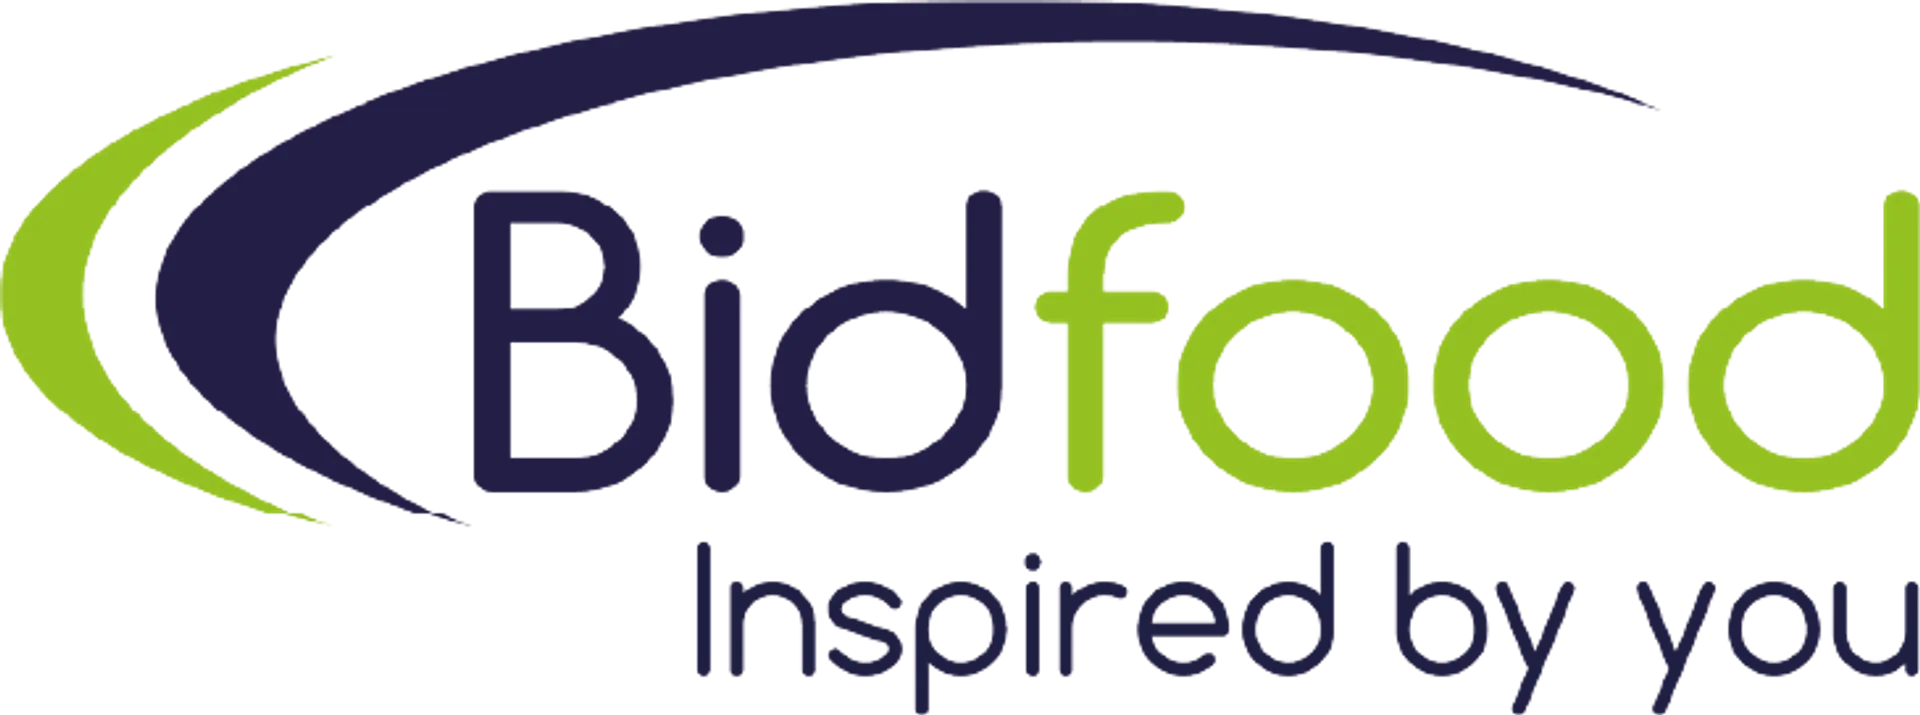 BIDFOOD logo. Current weekly ad